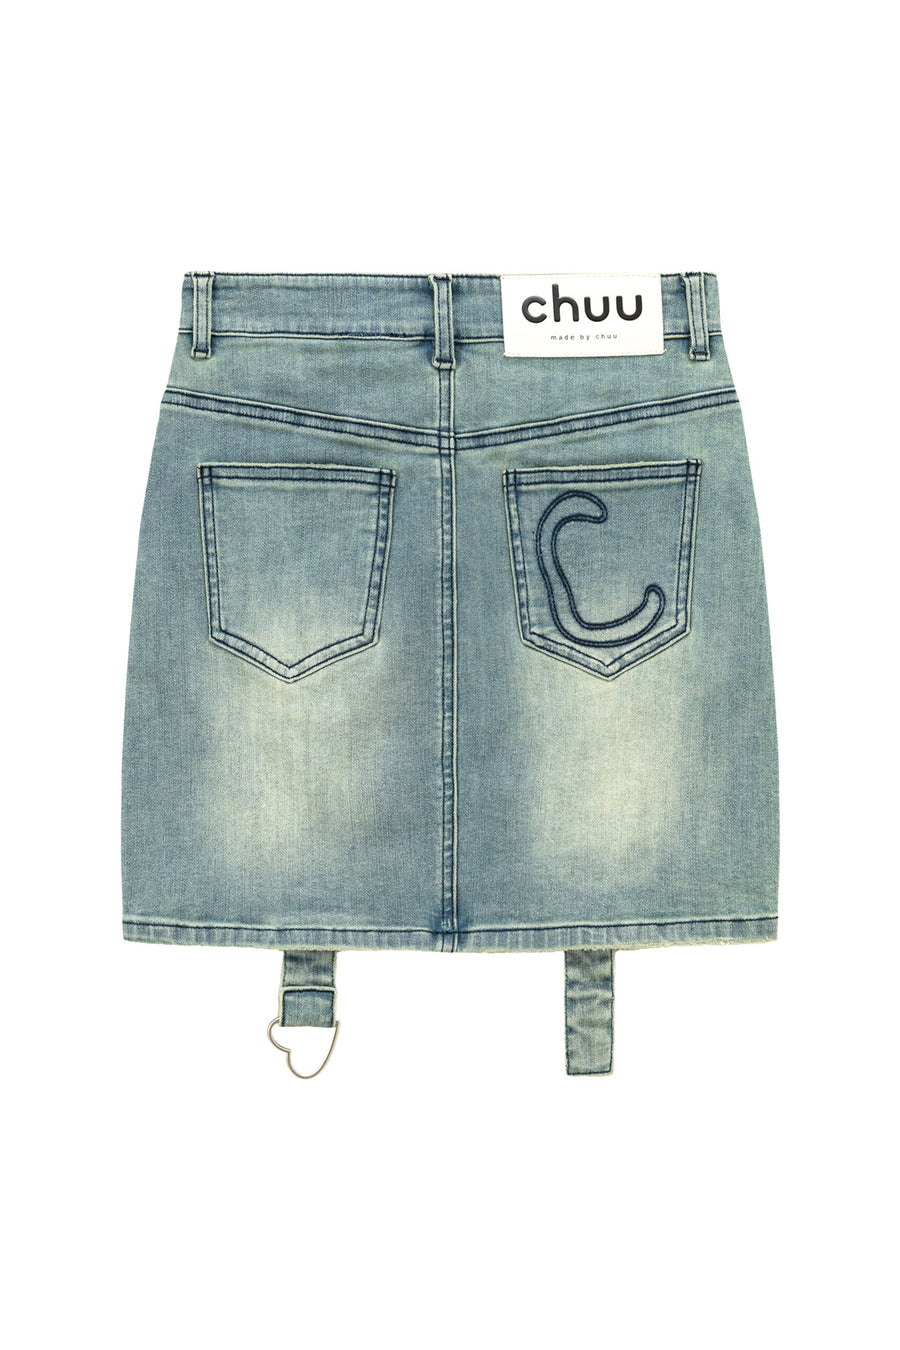 CHUU High Waisted Washed Denim Mini Skirt